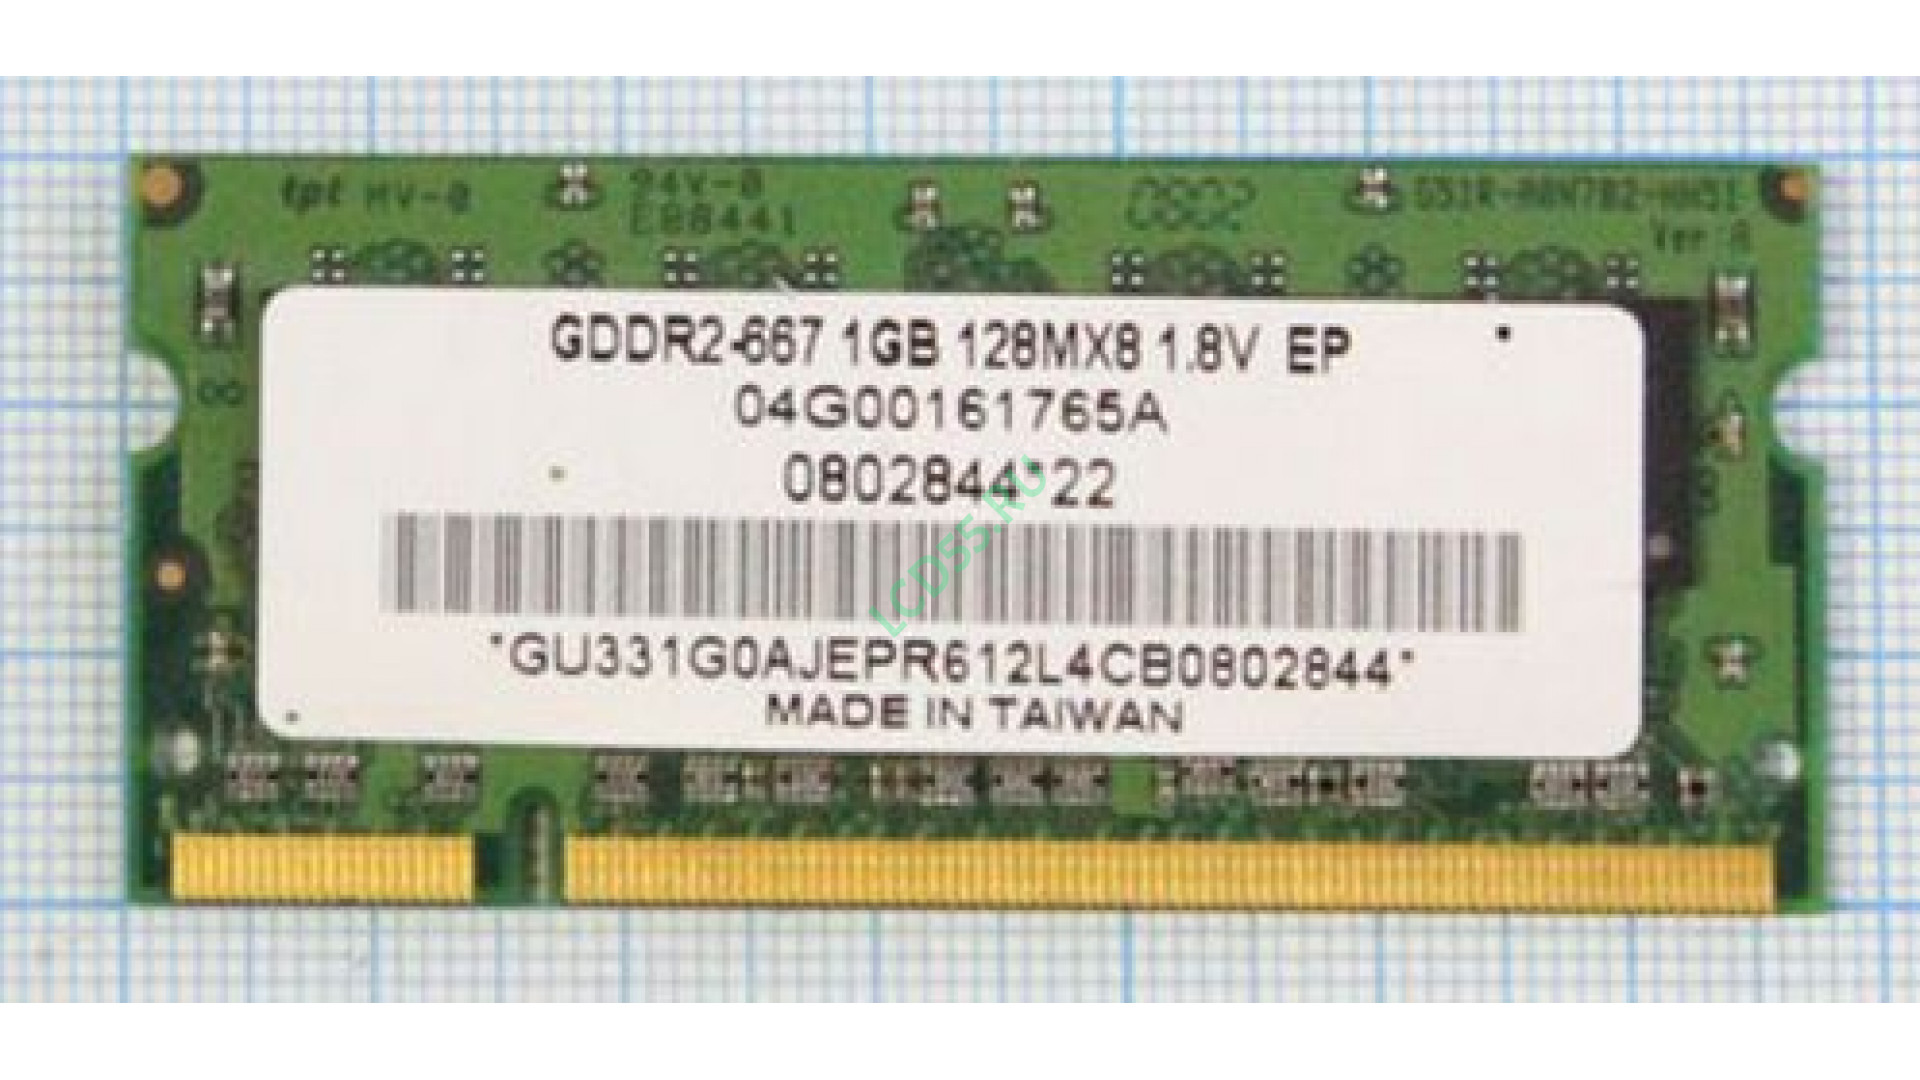 Оперативная память для ноутбука Elpida DDR-II 667Mhz SODIMM 1Gb <PC2-5300>